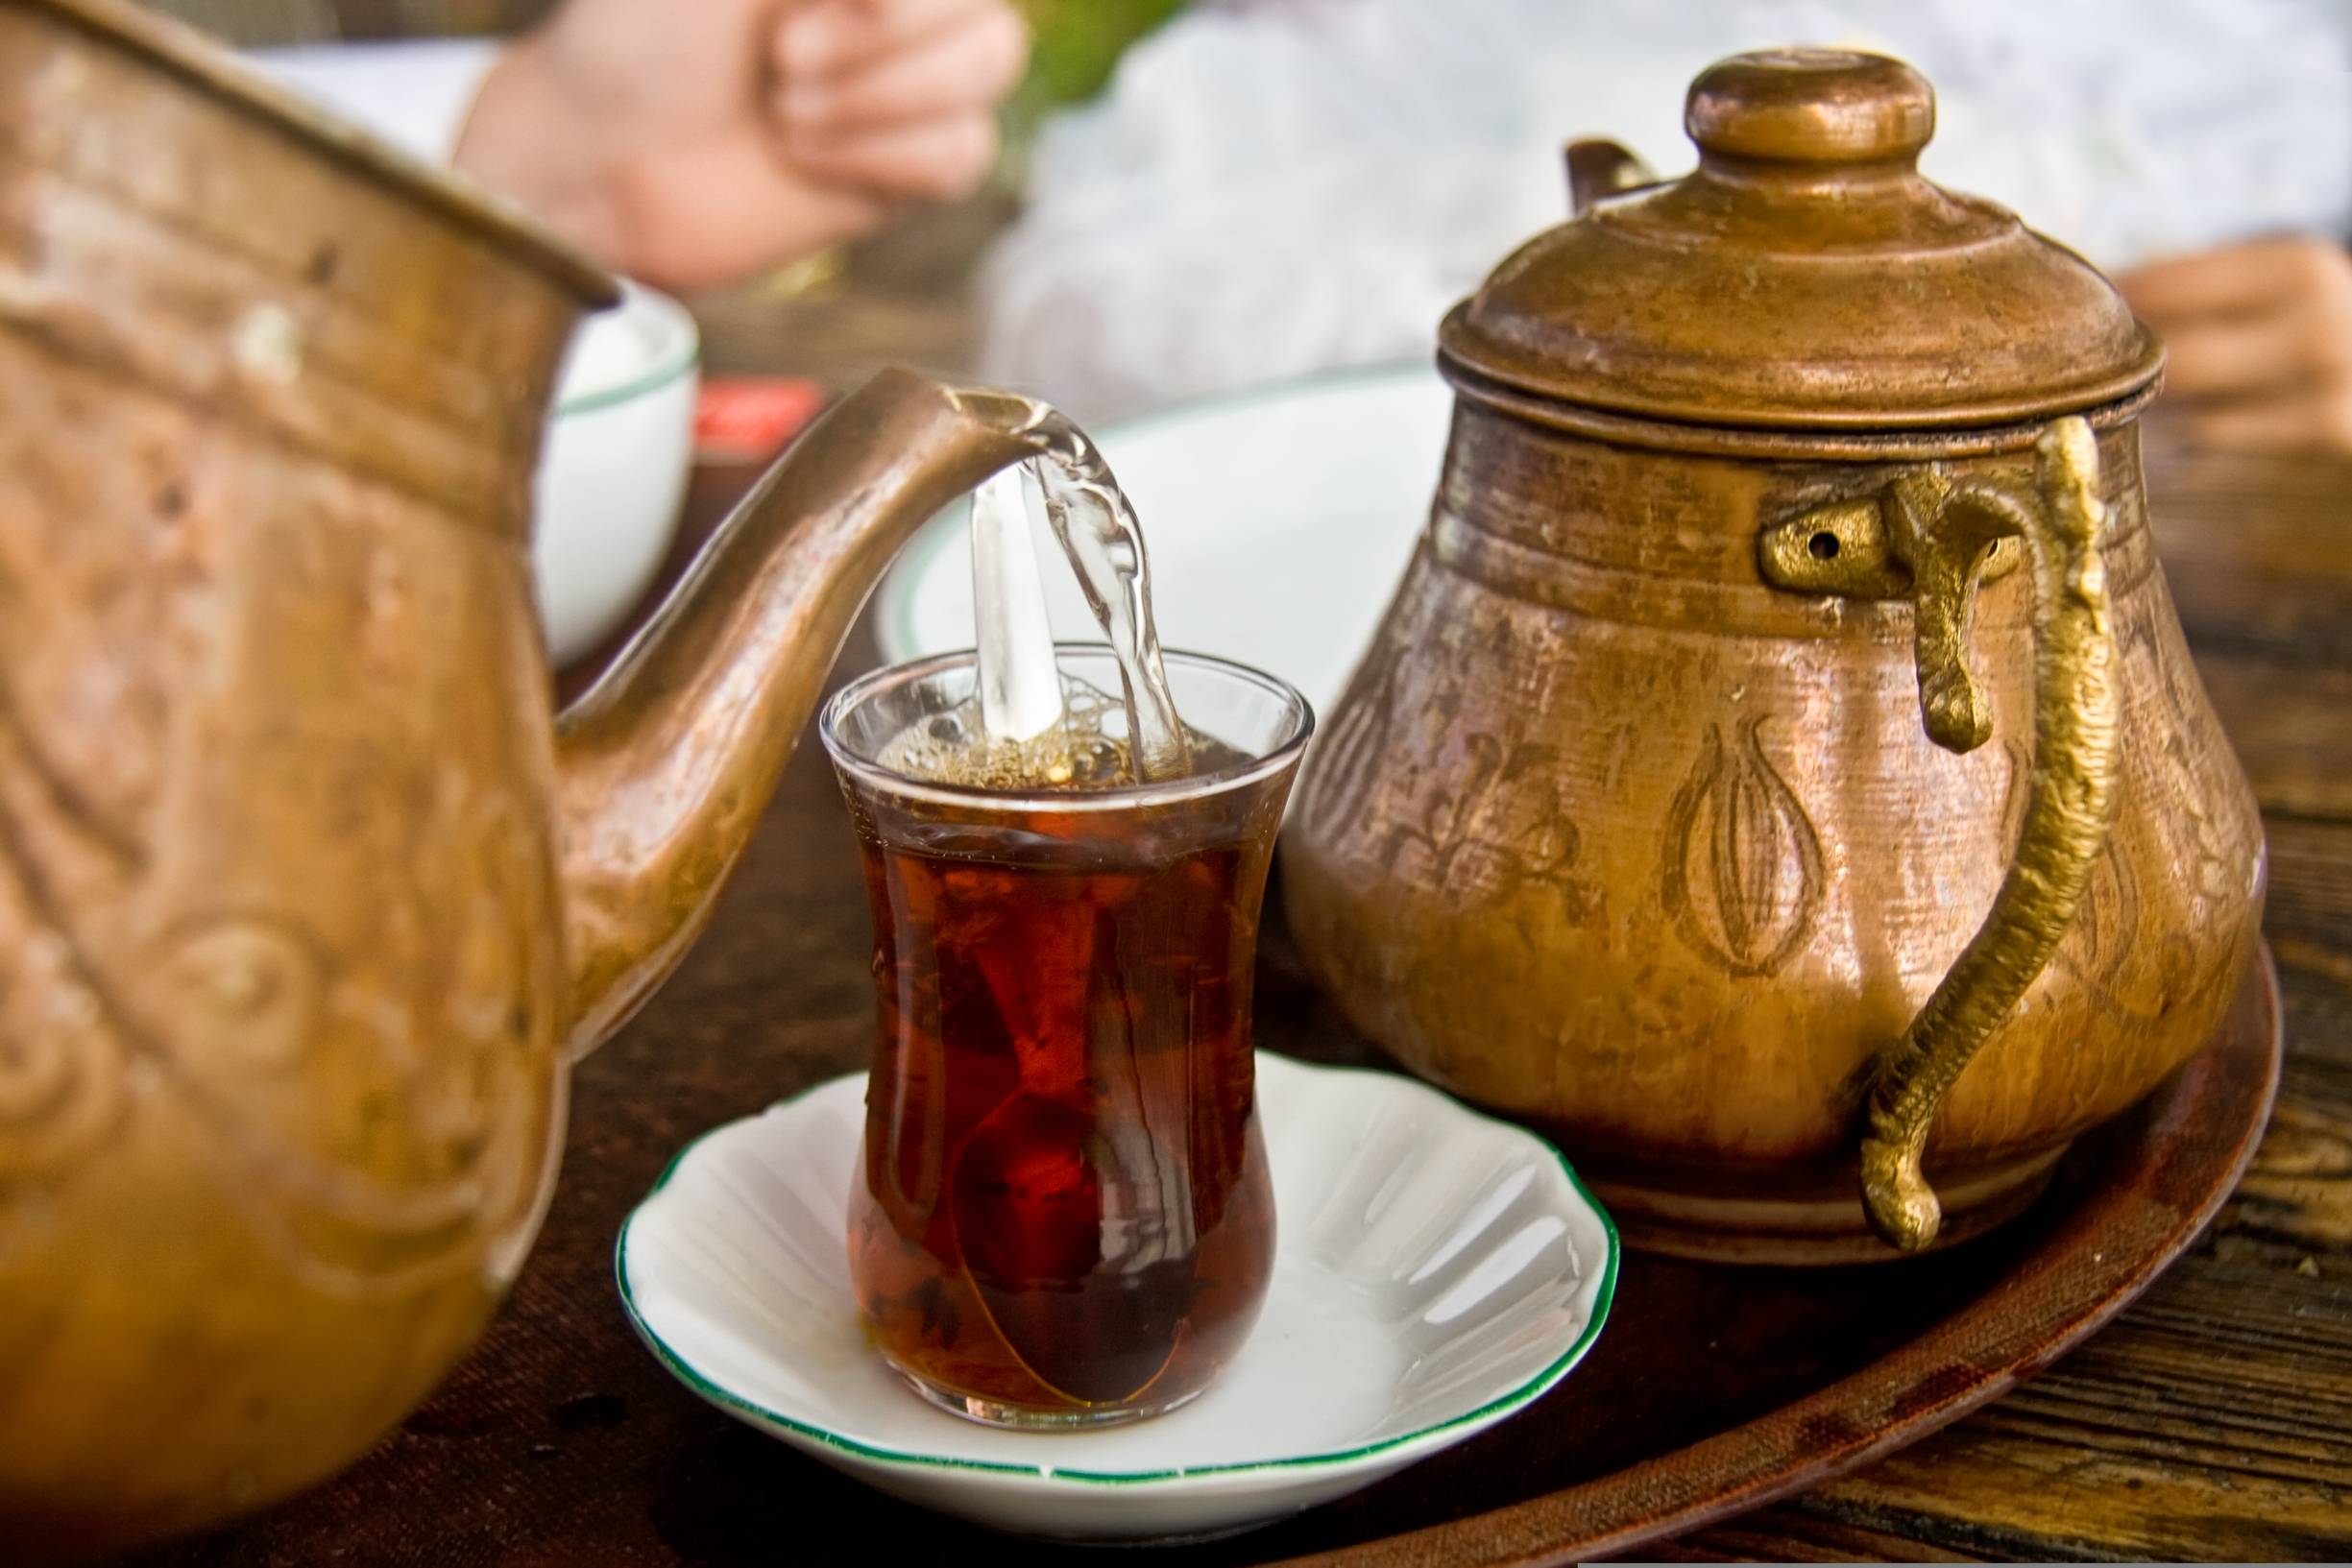 Турецкий чай как феномен или какой чай привезти из турции